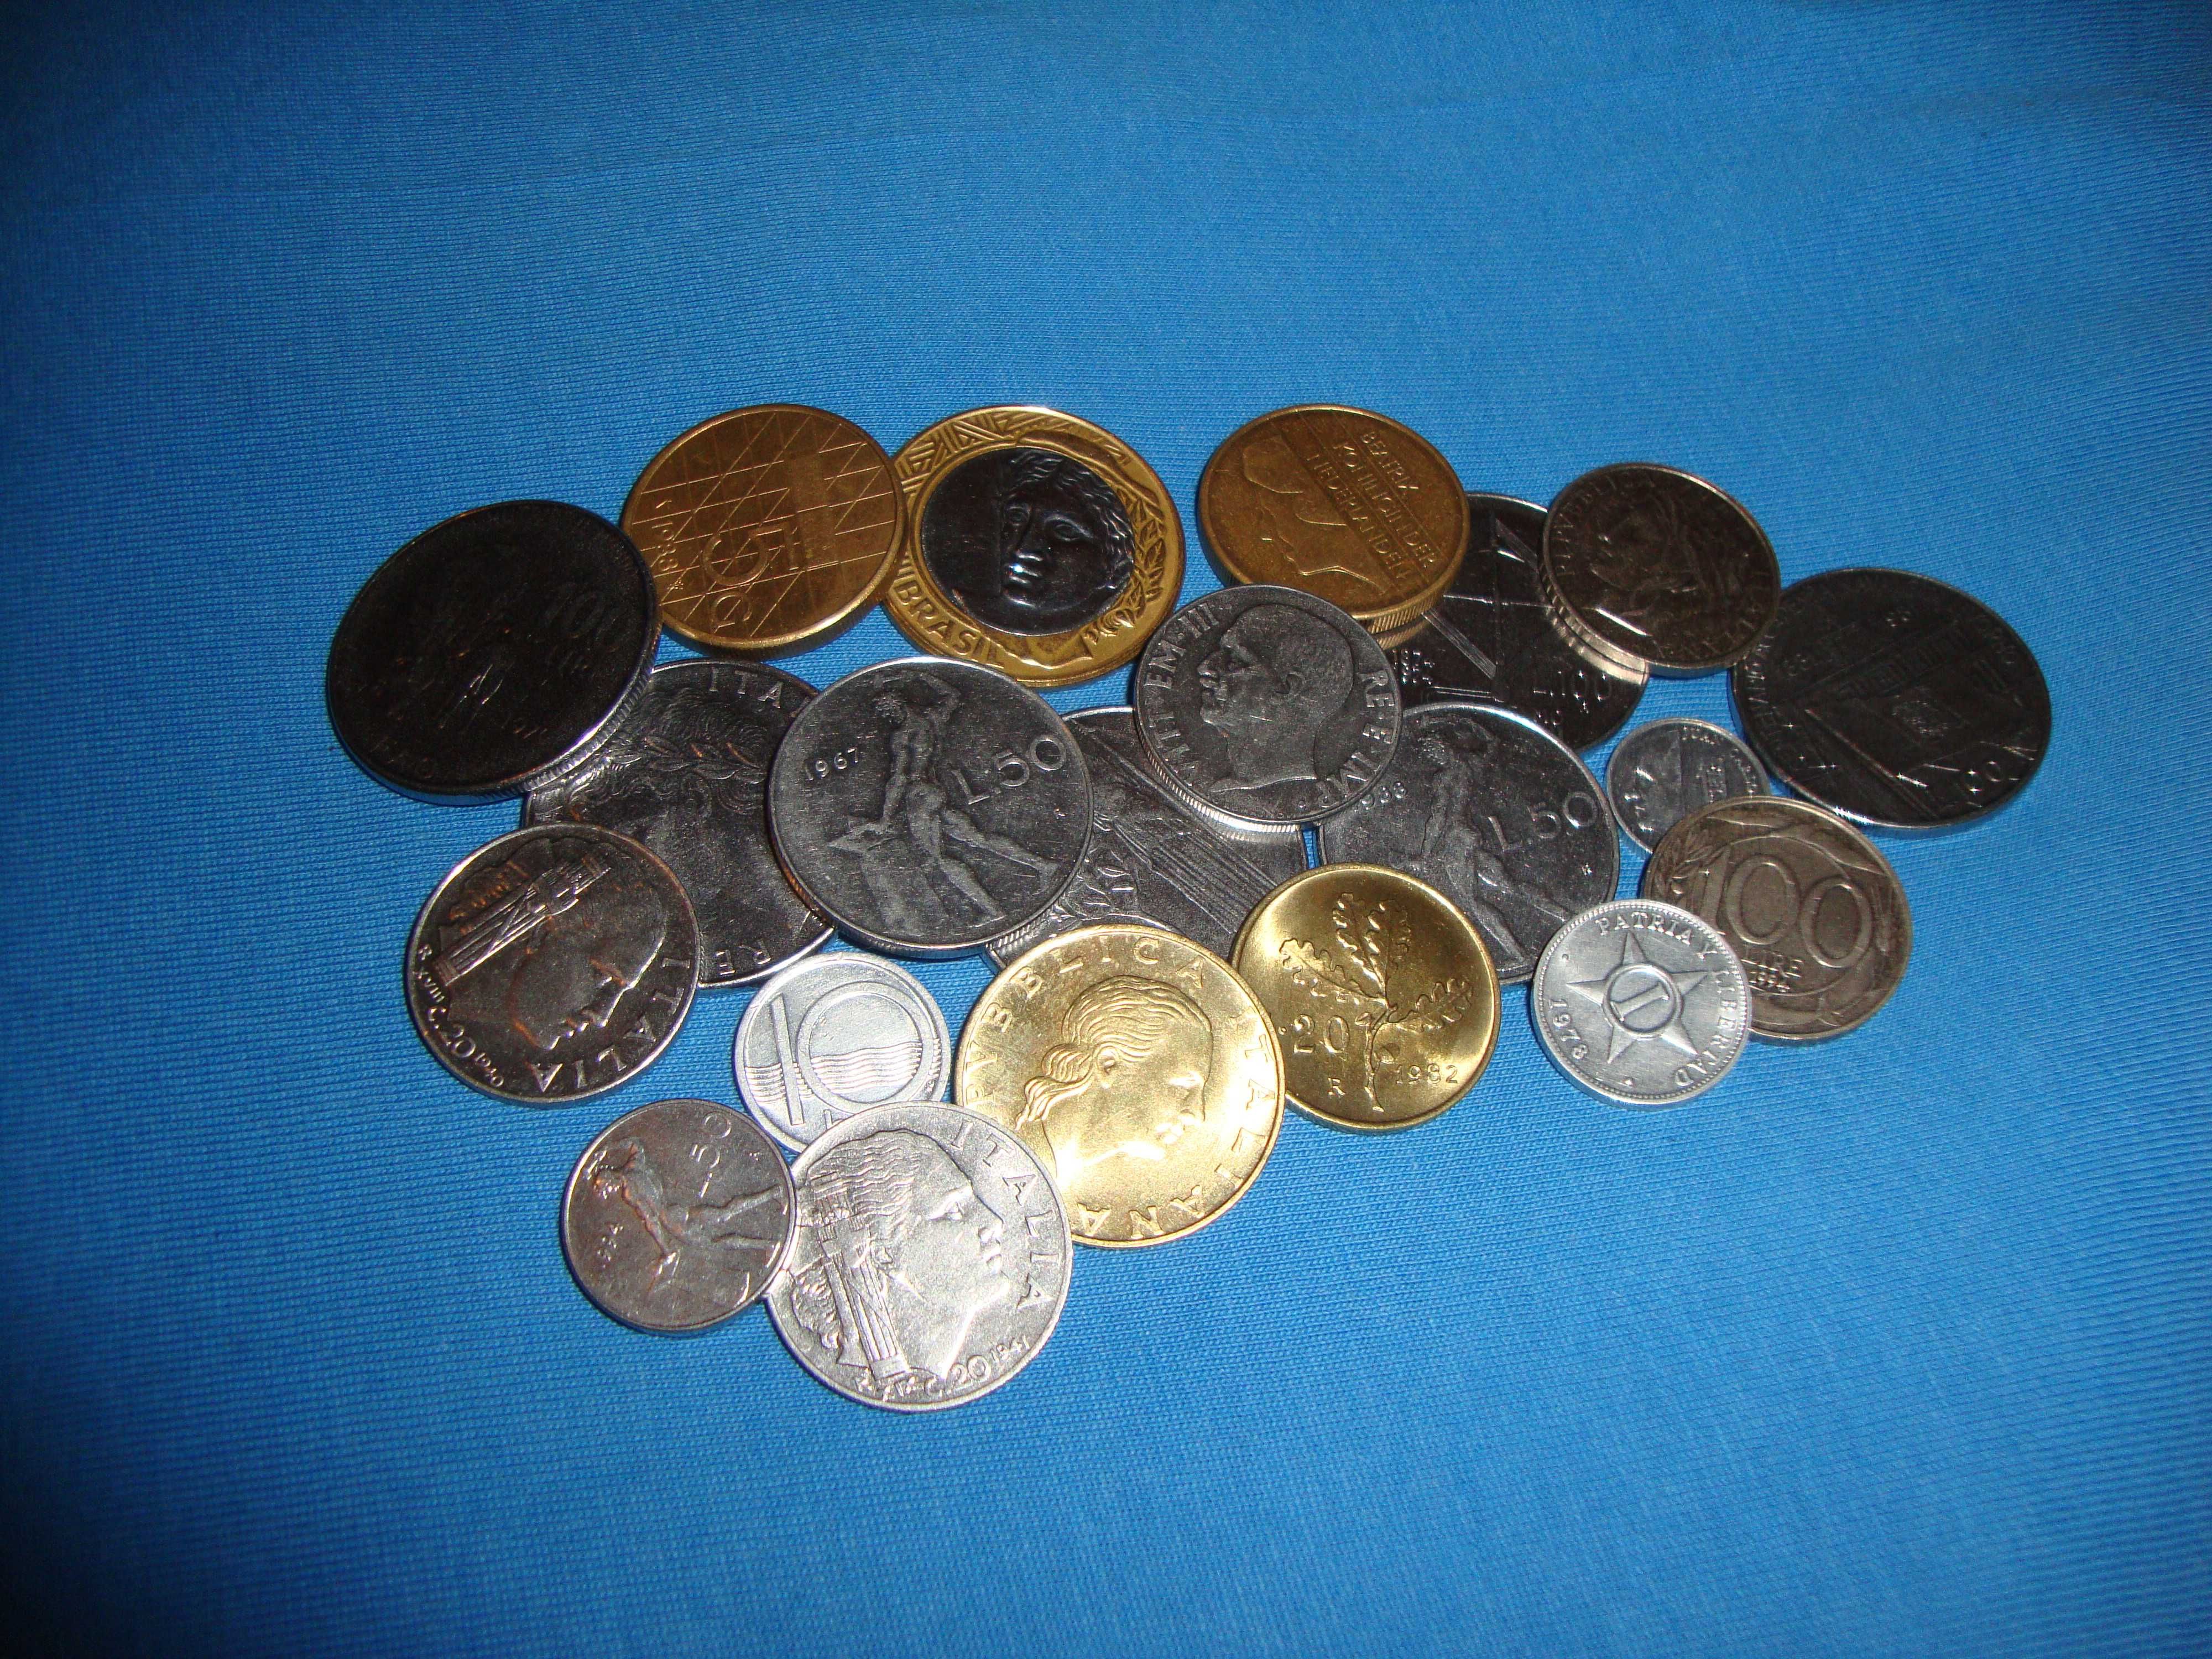 Монеты разных стран - Италия, Бразилия, Испания 21 шт. одним лотом !